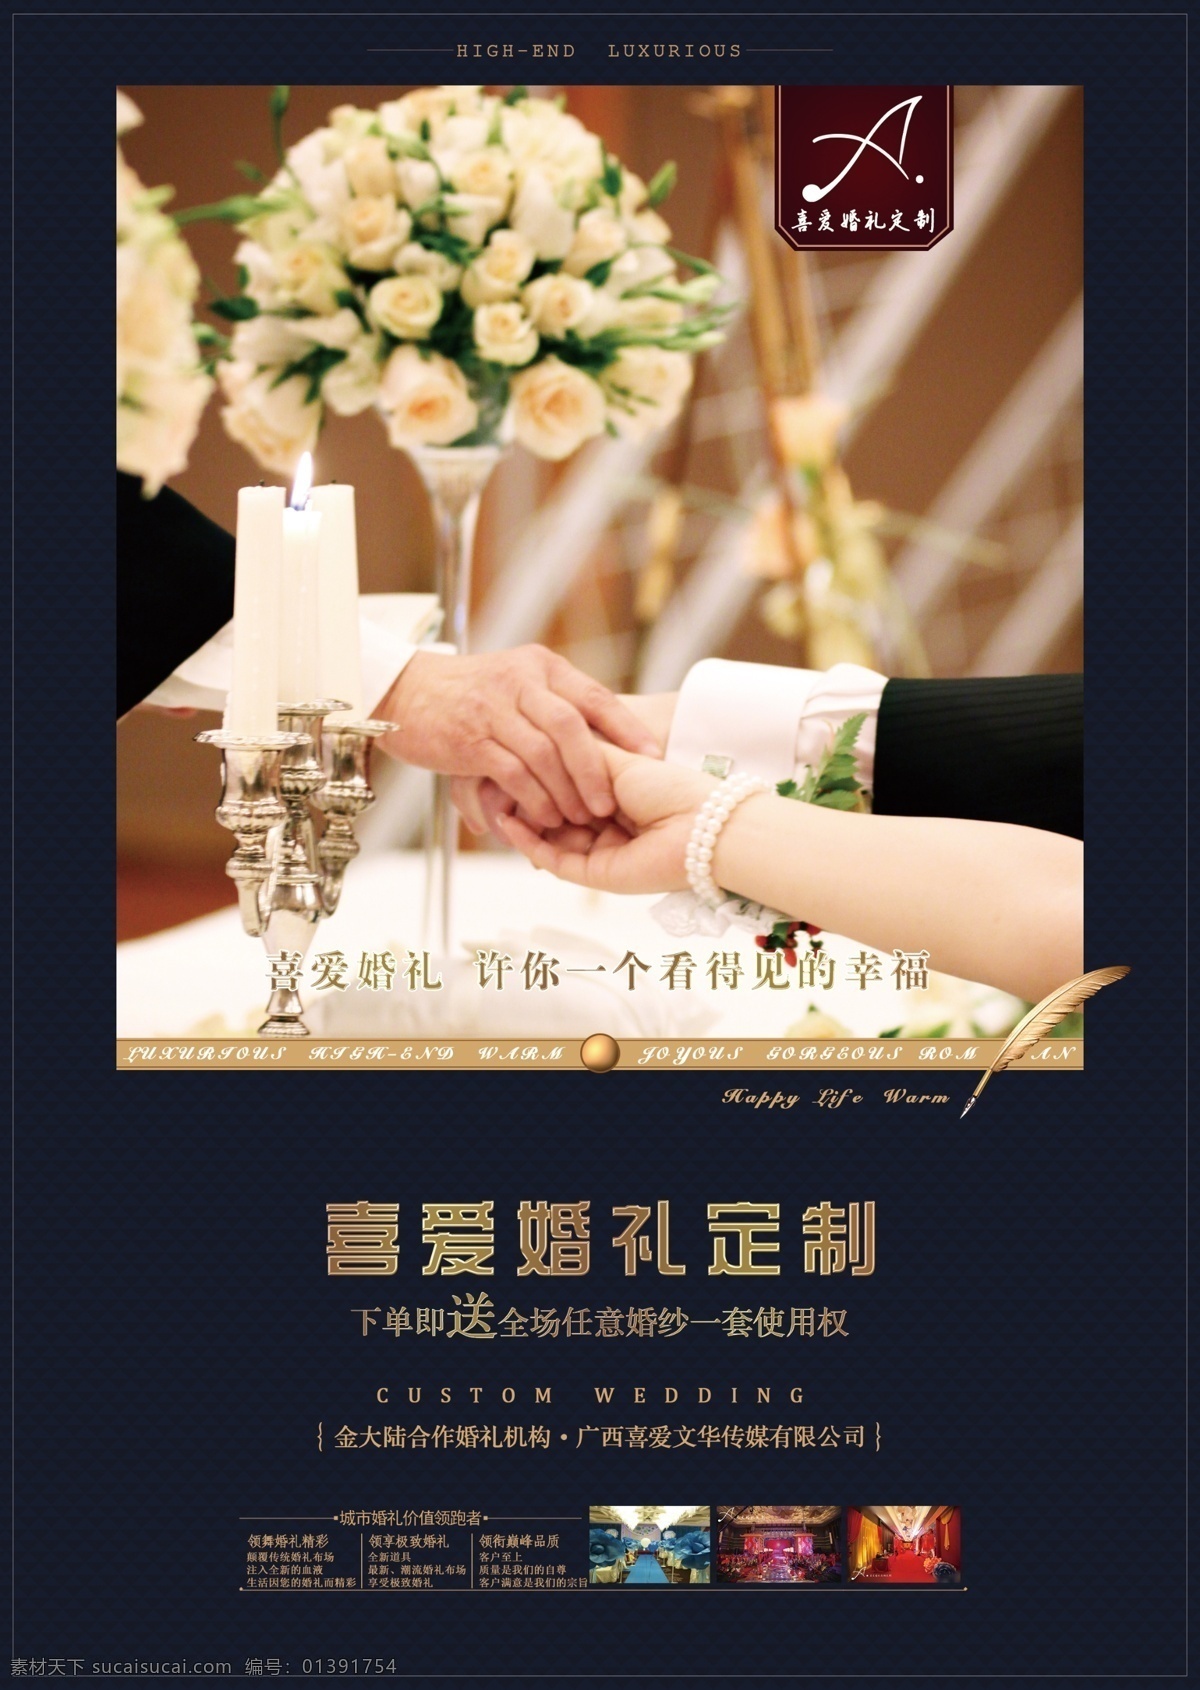 宣传单 酒店 婚礼 婚庆 婚庆宣传单 海报 宣传单设计 高端 大气